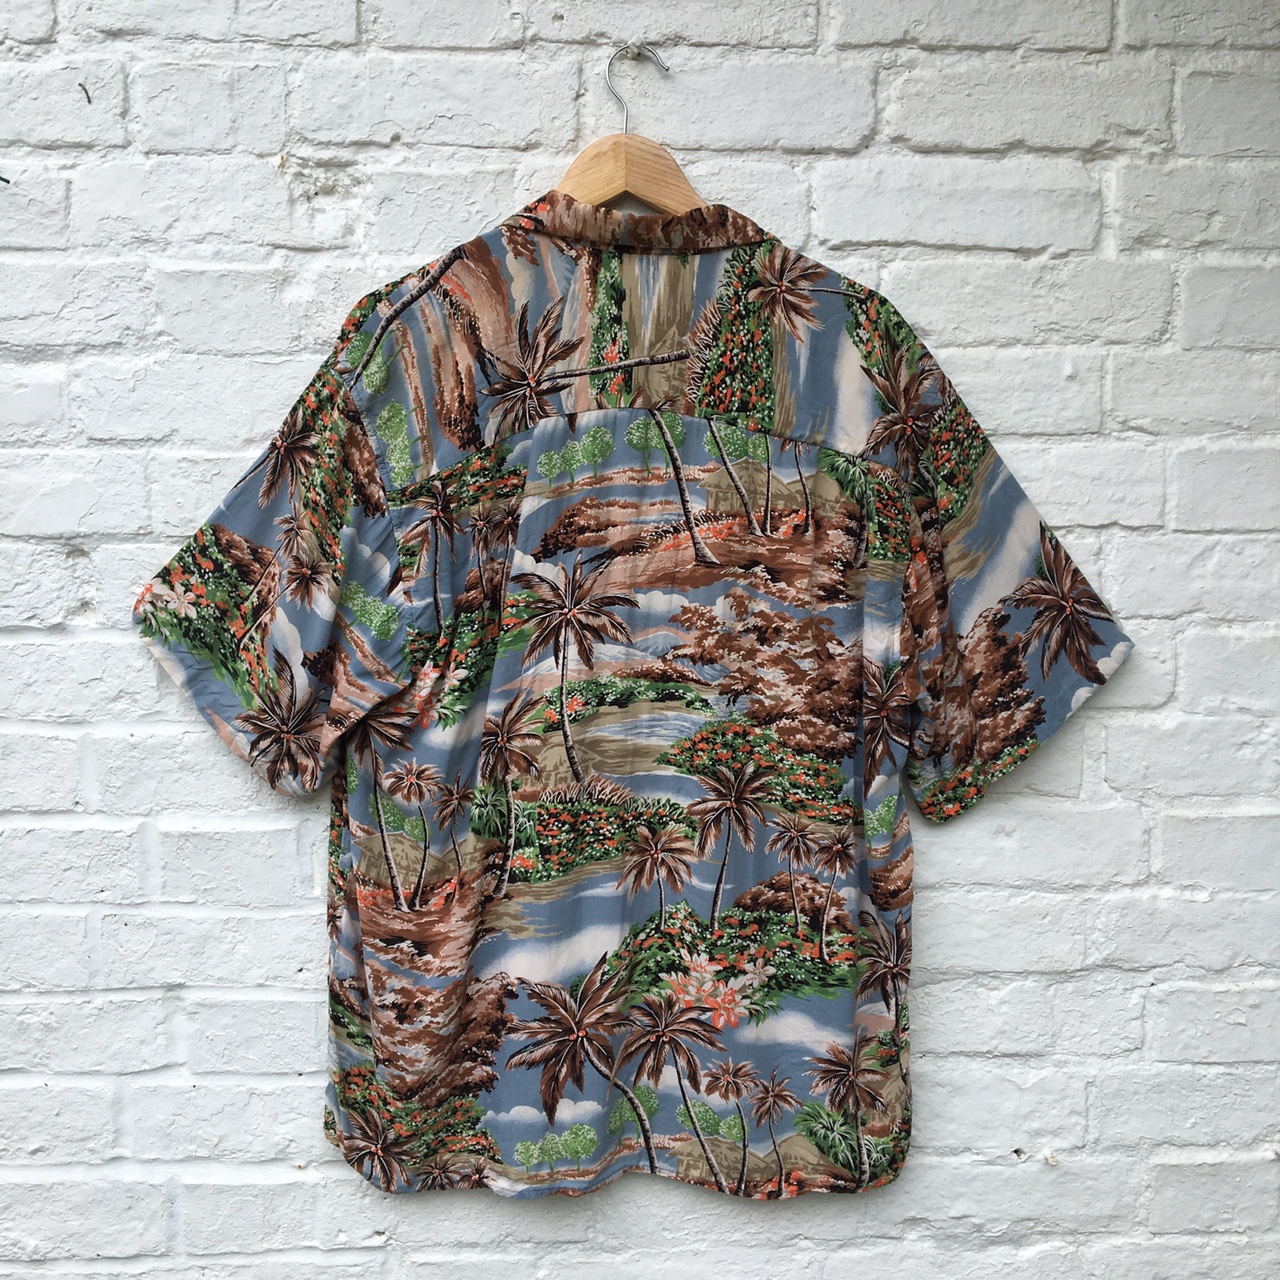 Reyn Spooner Hawaiian shirt (L)